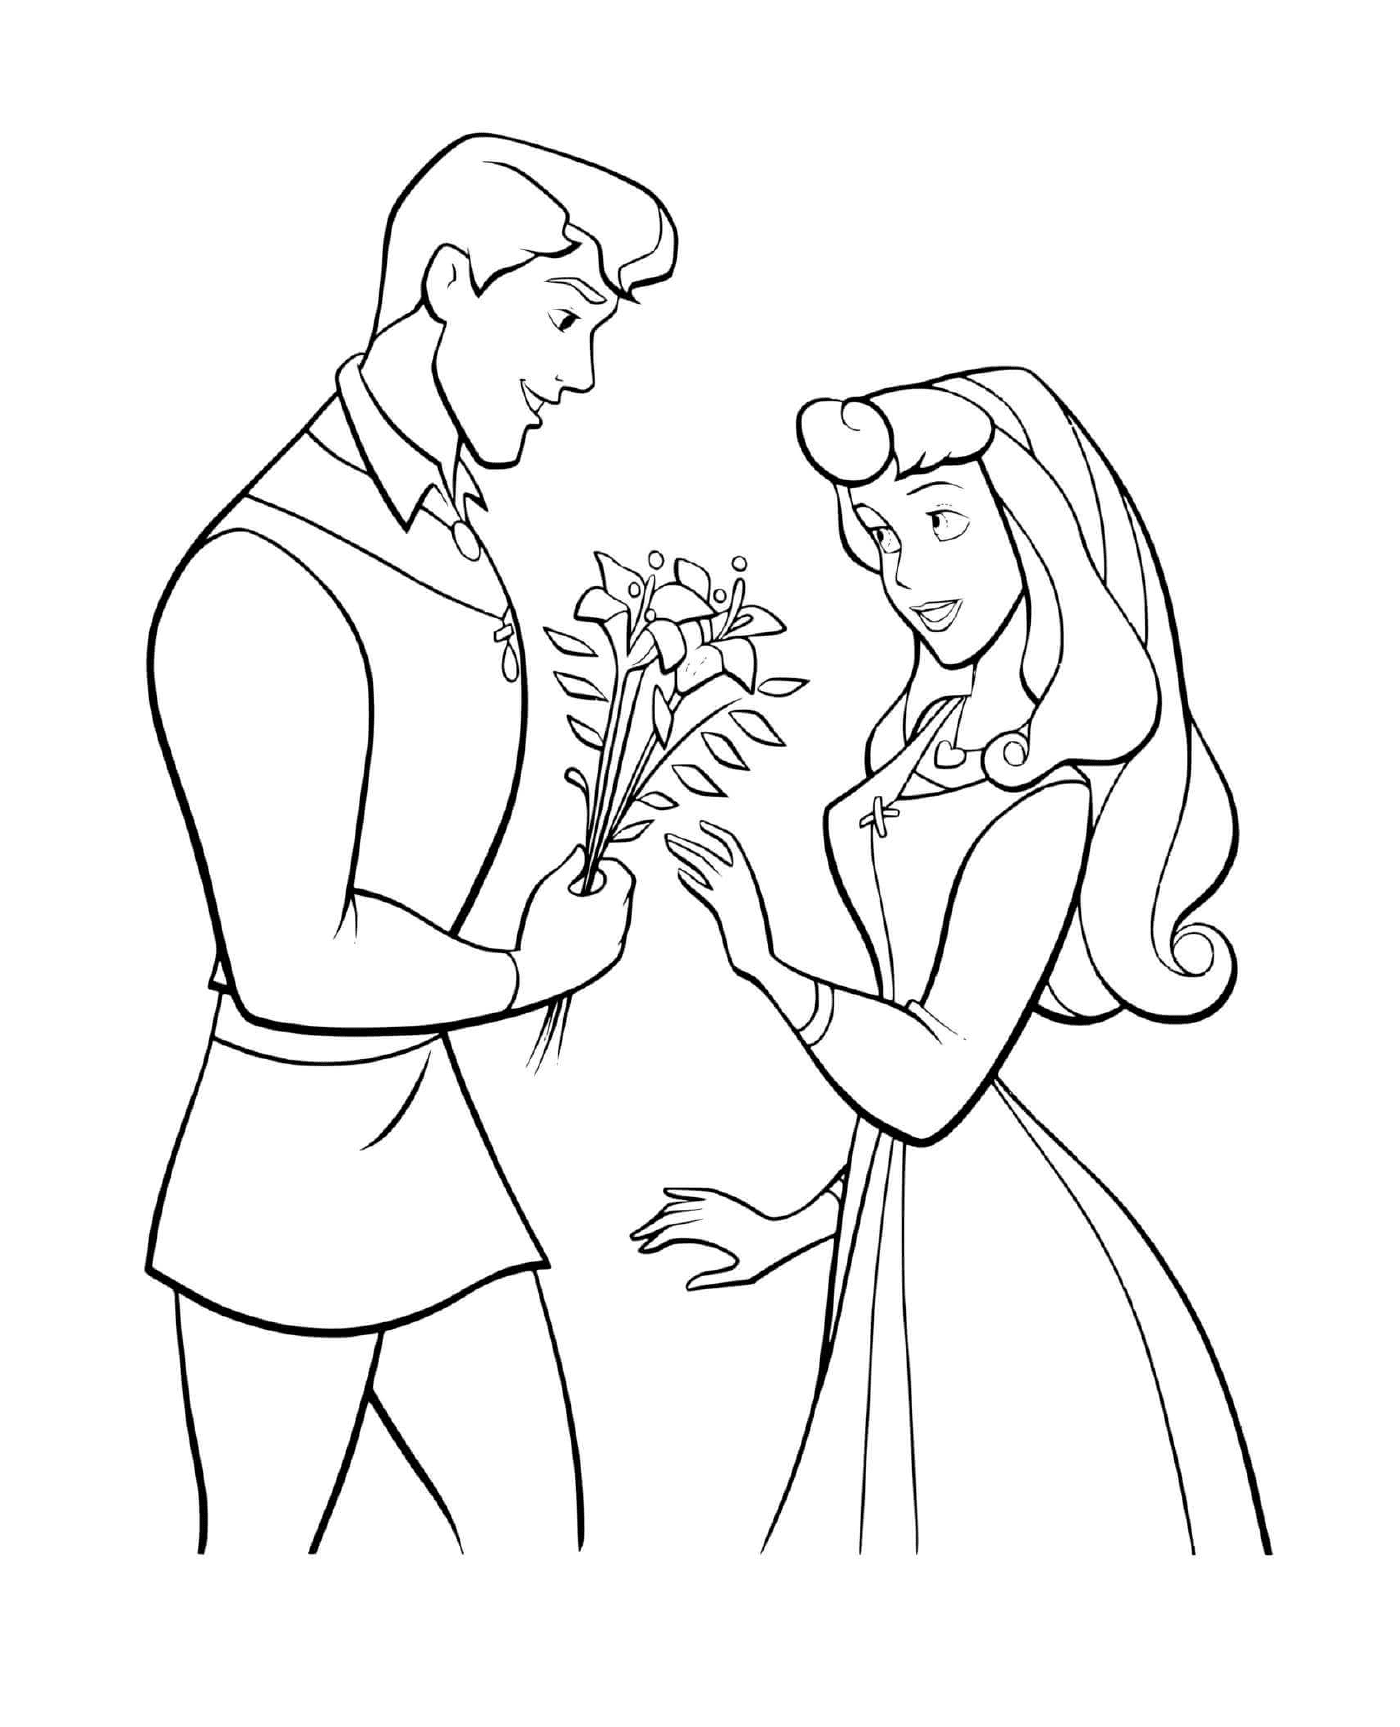  Un uomo e una donna in possesso di fiori 